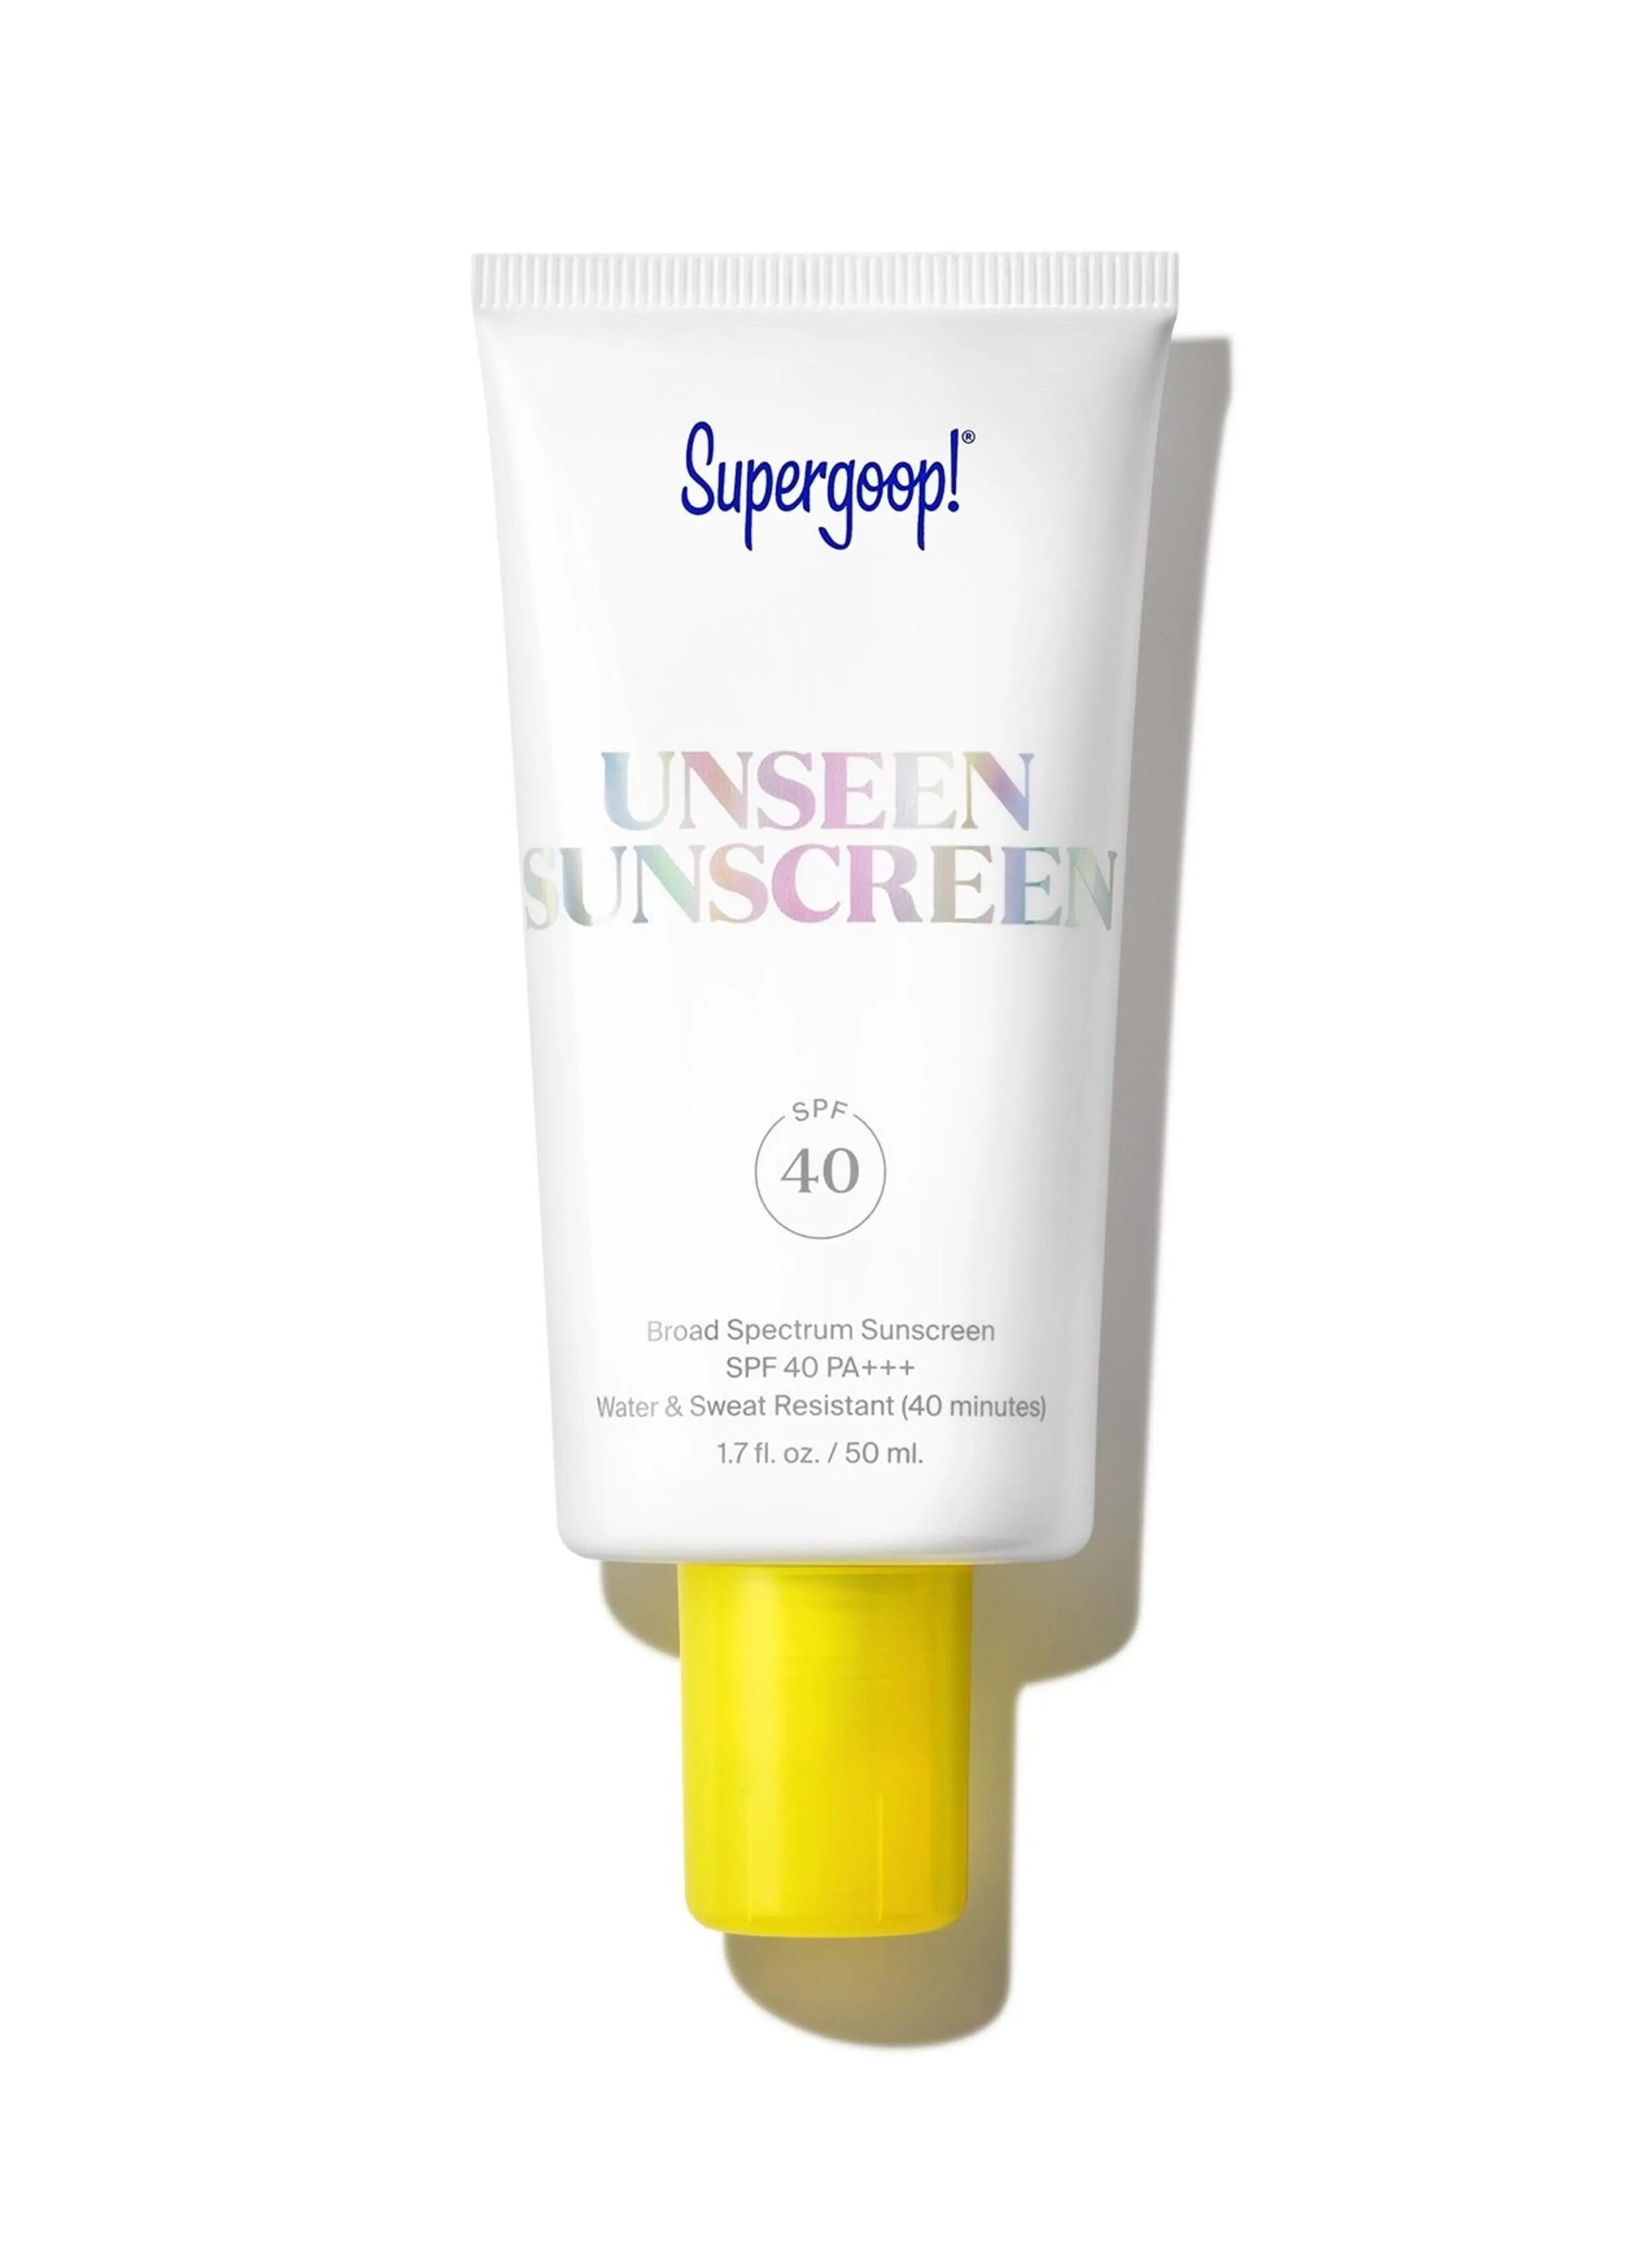 supergoop-unseen-sunscreen-spf-40-50ml.jpg